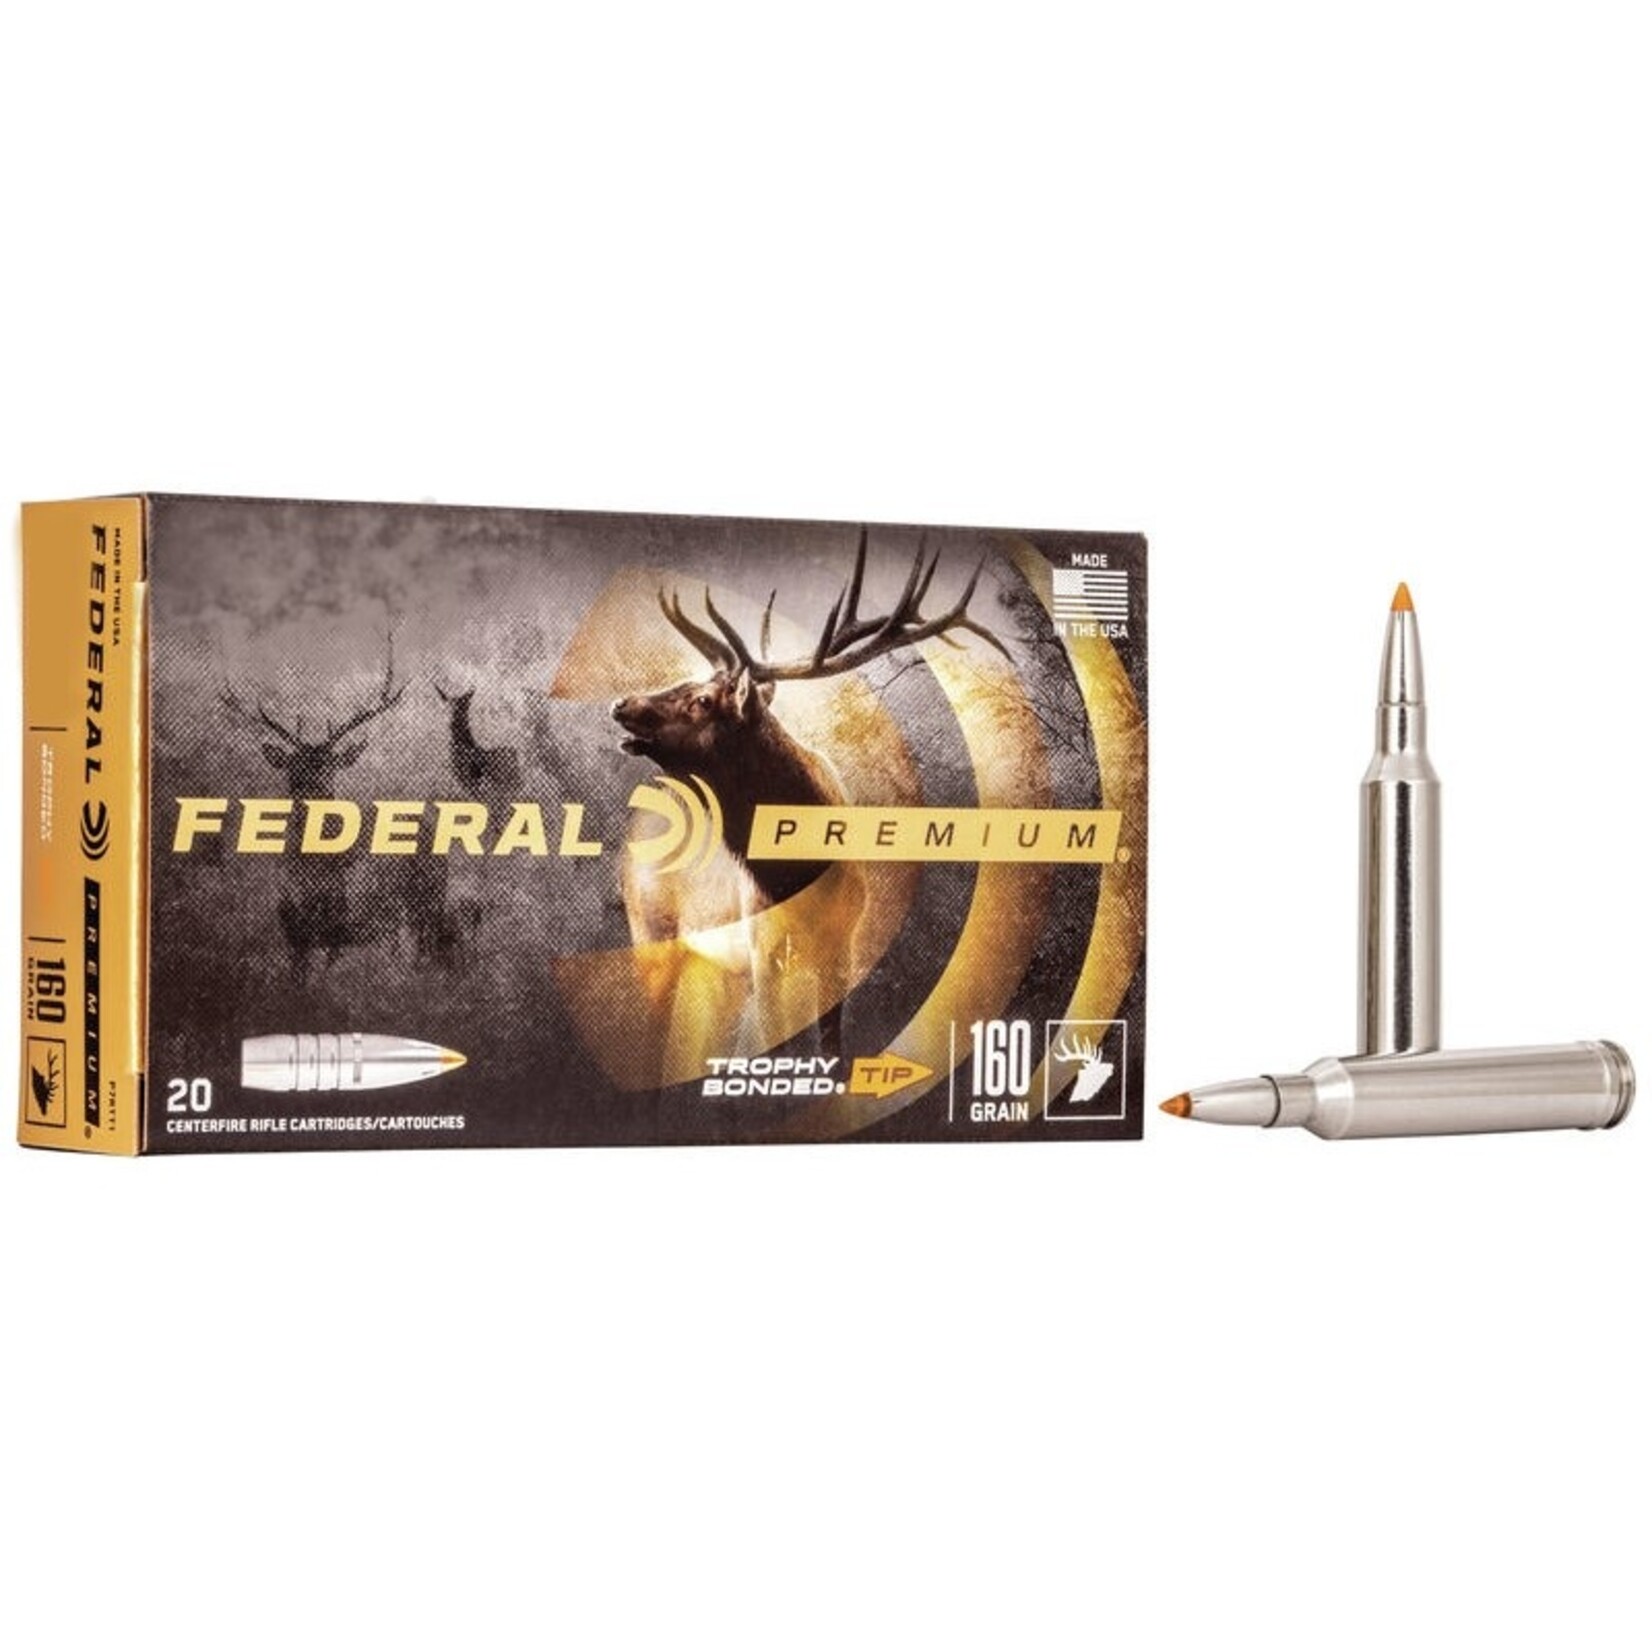 Federal Federal Premium Trophy Bonded Ammunition